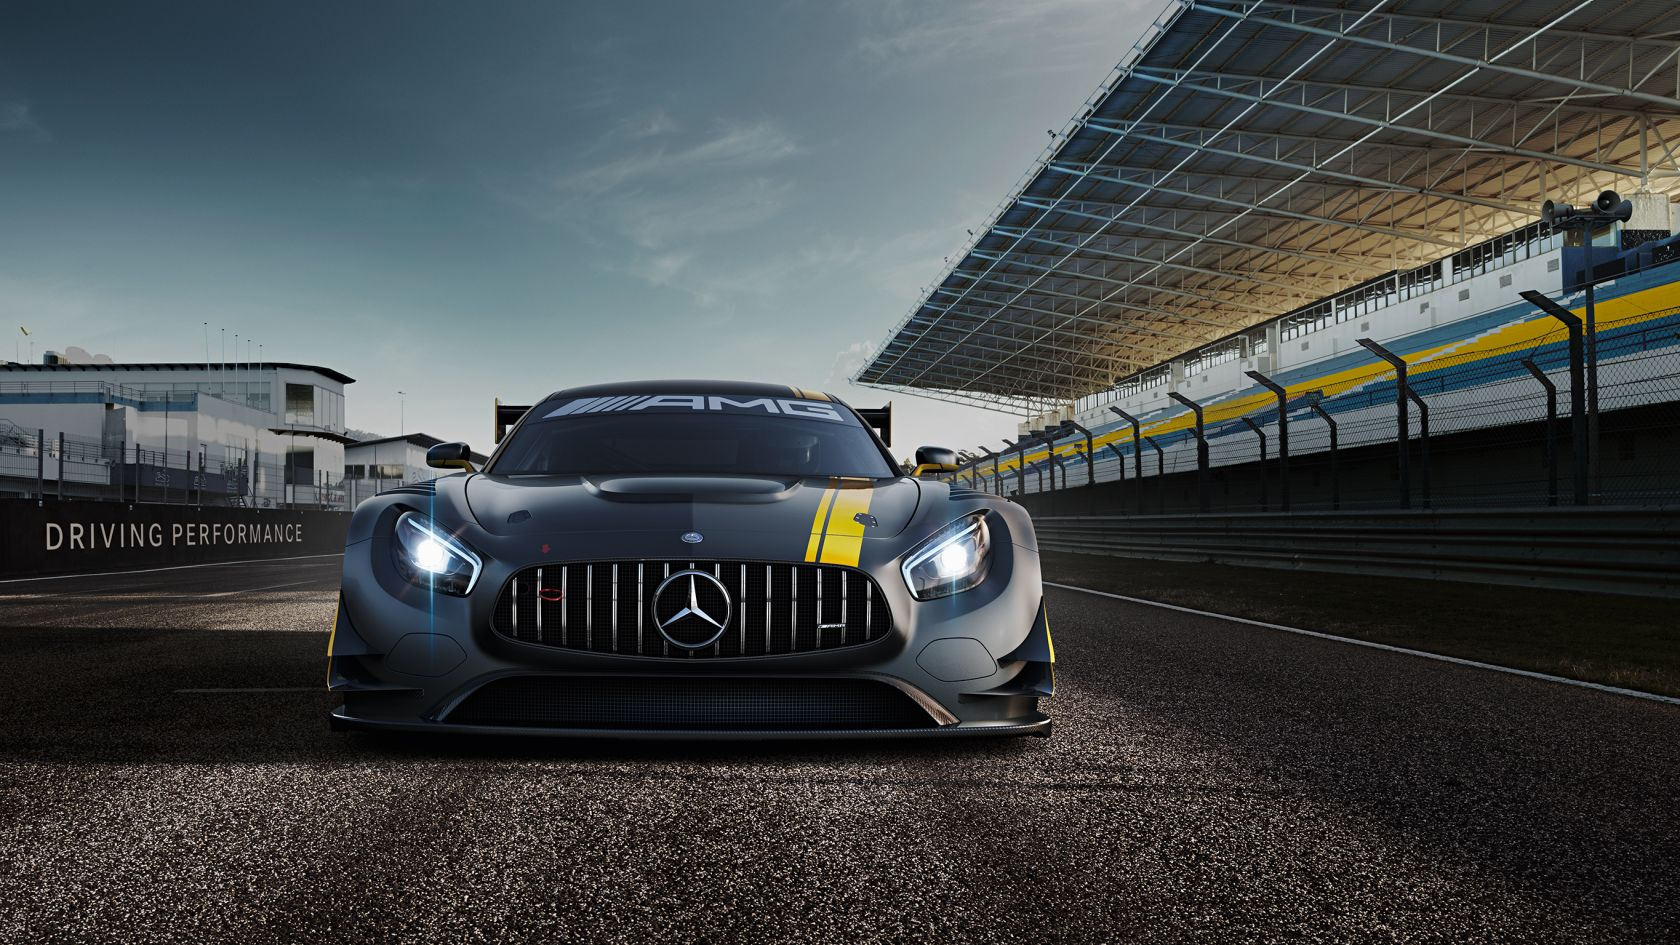 Mercedes AMG em pista de corrida; para matéria sobre nomenclatura dos carros